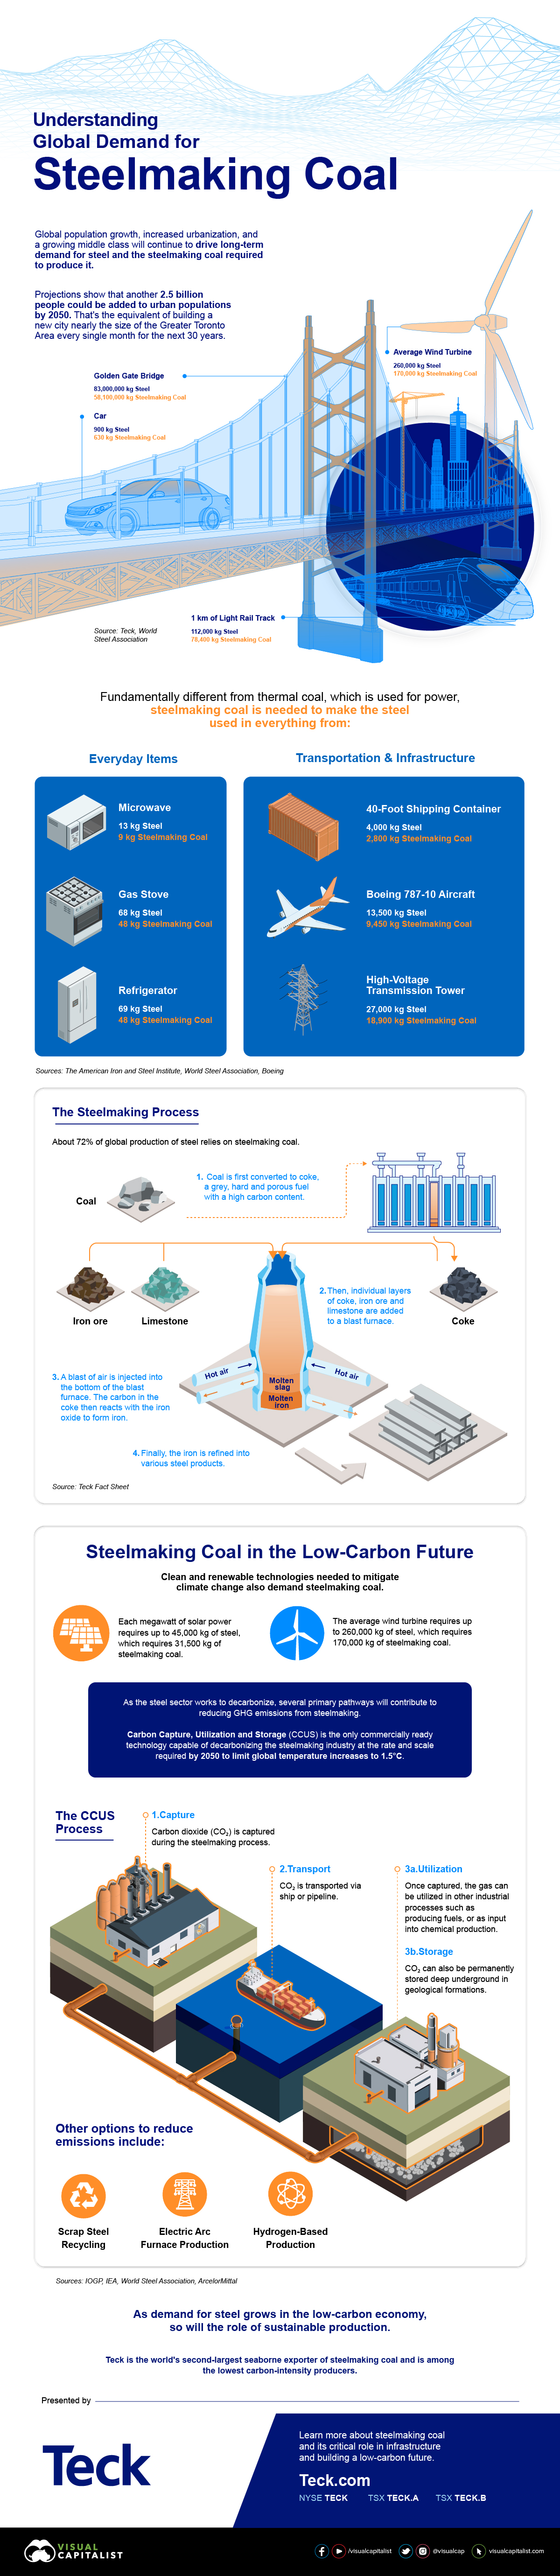 https://www.visualcapitalist.com/wp-content/uploads/2022/02/Teck_Infographics_Steelmaking-Coal-2-1.jpg